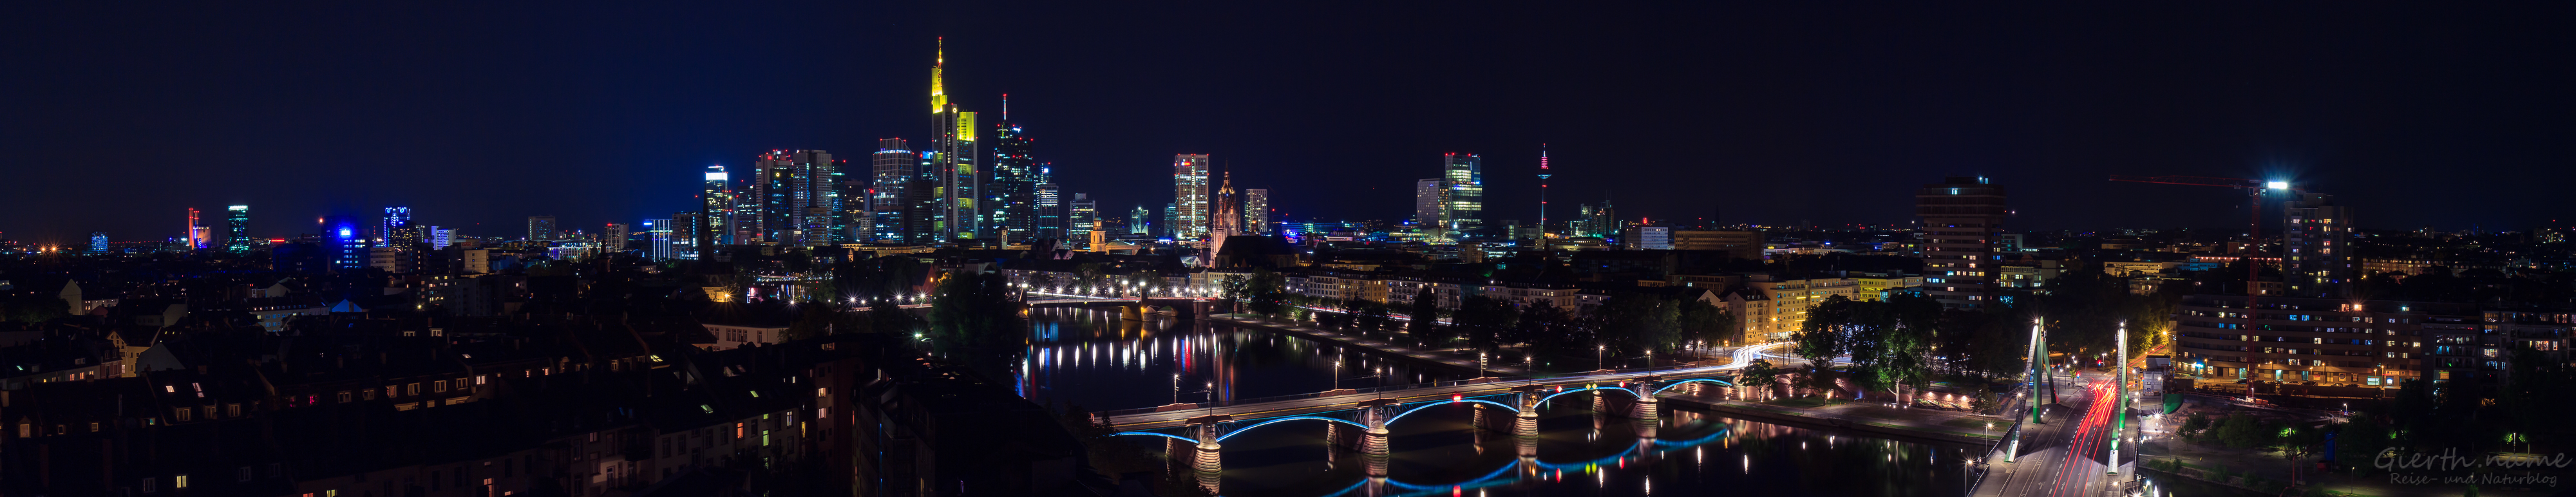 Frankfurt Mainhatten bei Nacht vom Lindner Mainplaza fotografiert